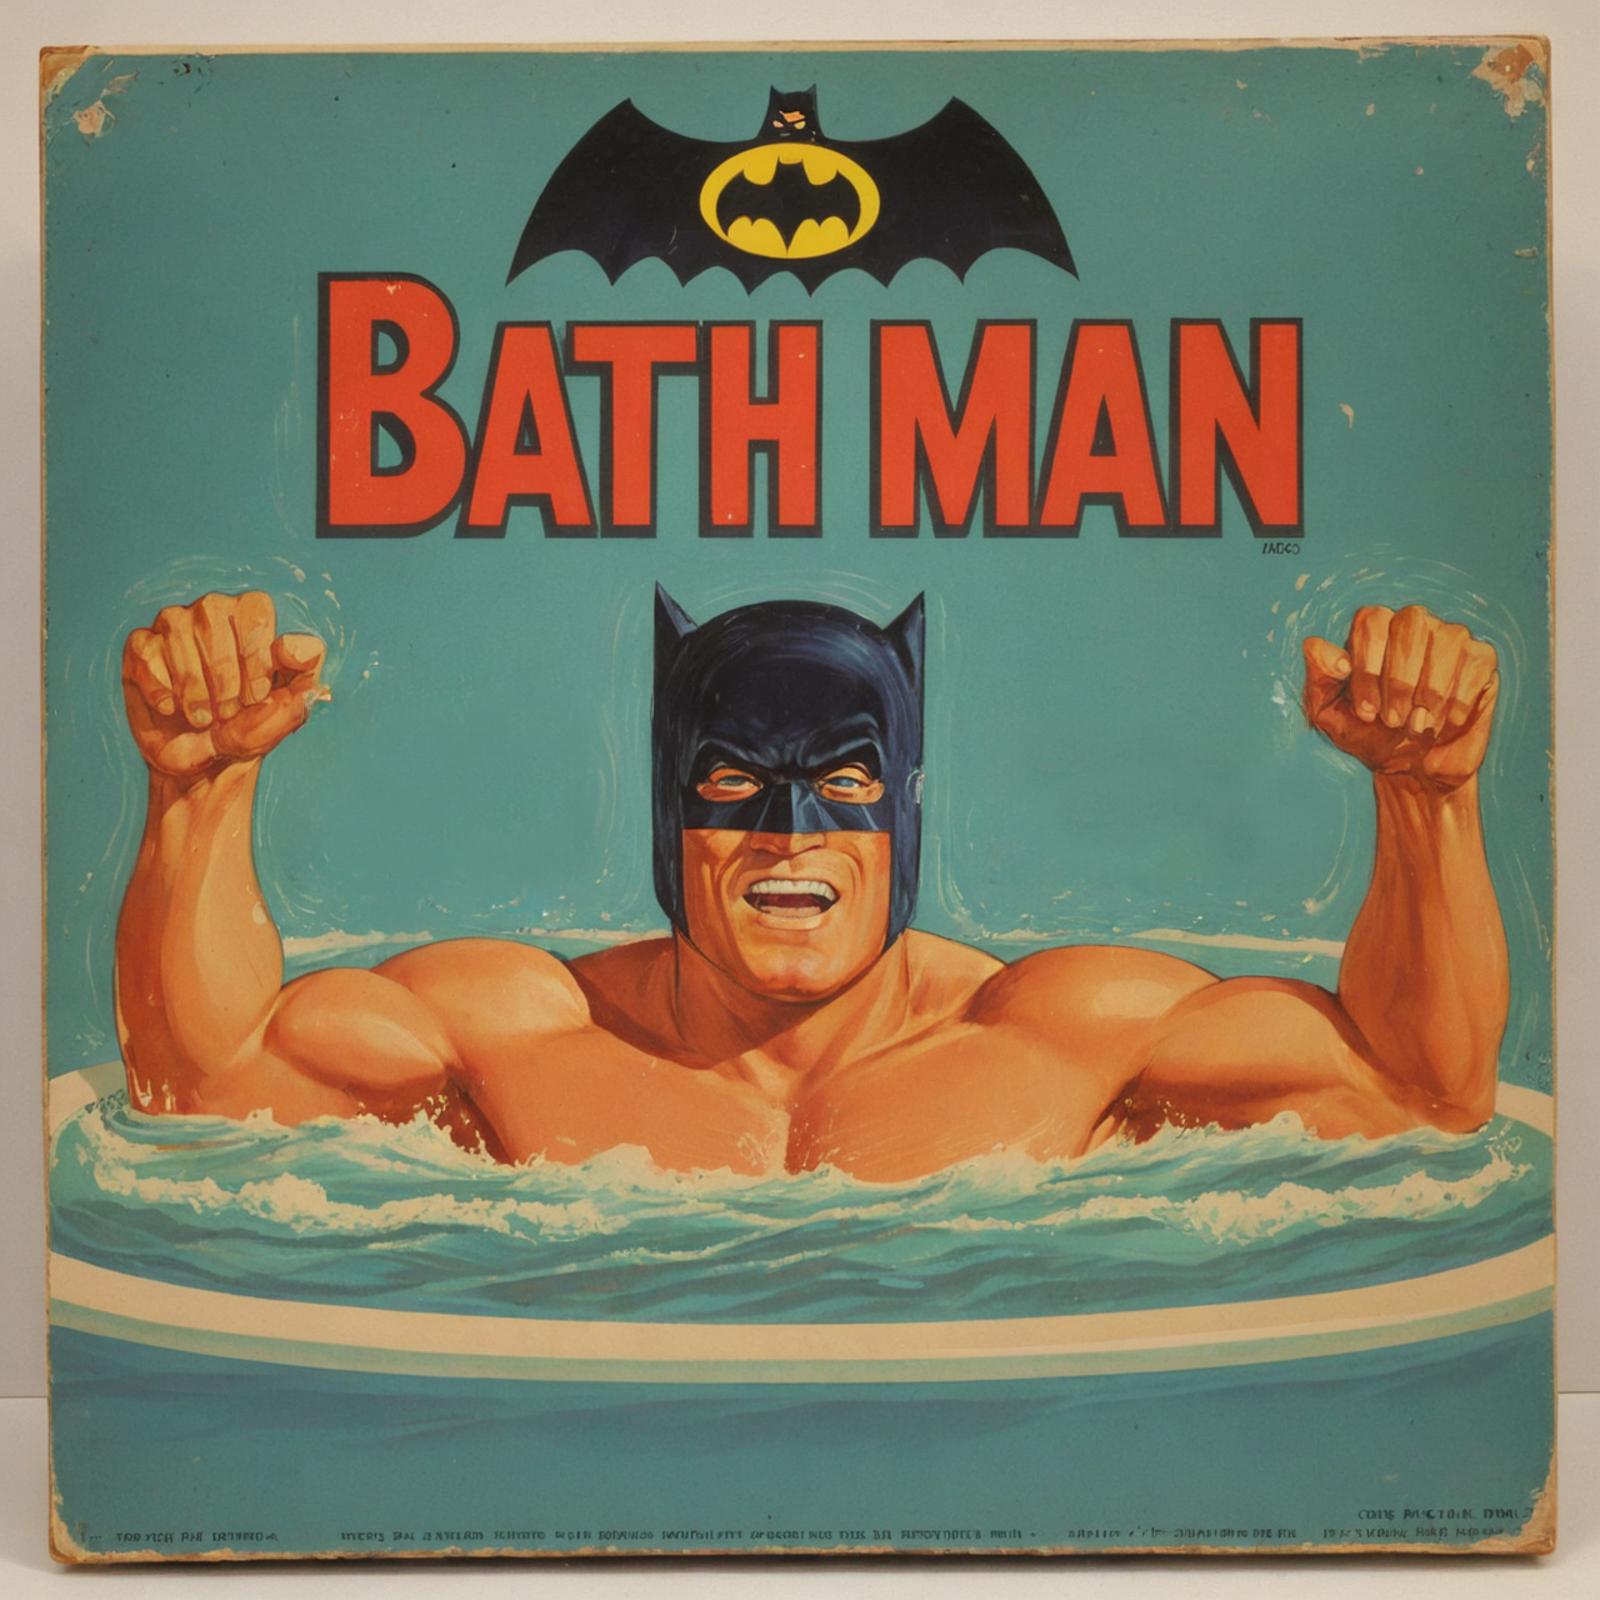 A Batman comic book cover shows him in a bathtub.